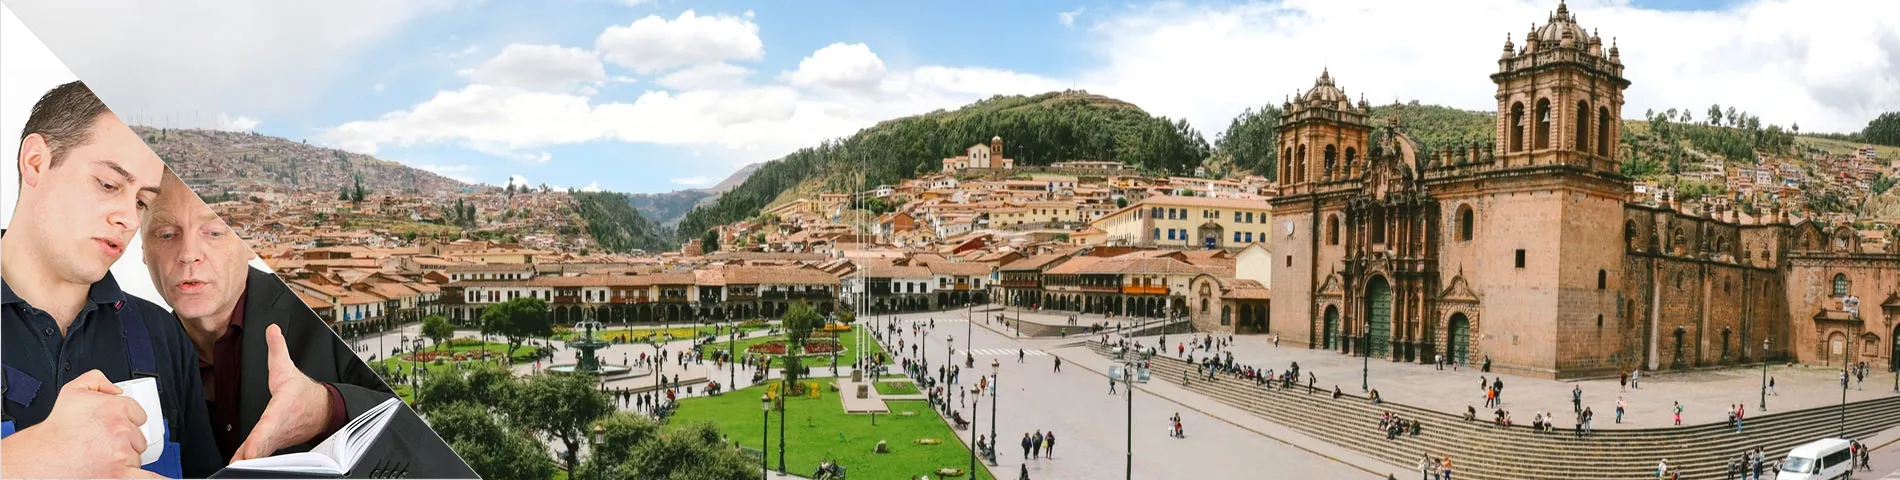 Cuzco - 